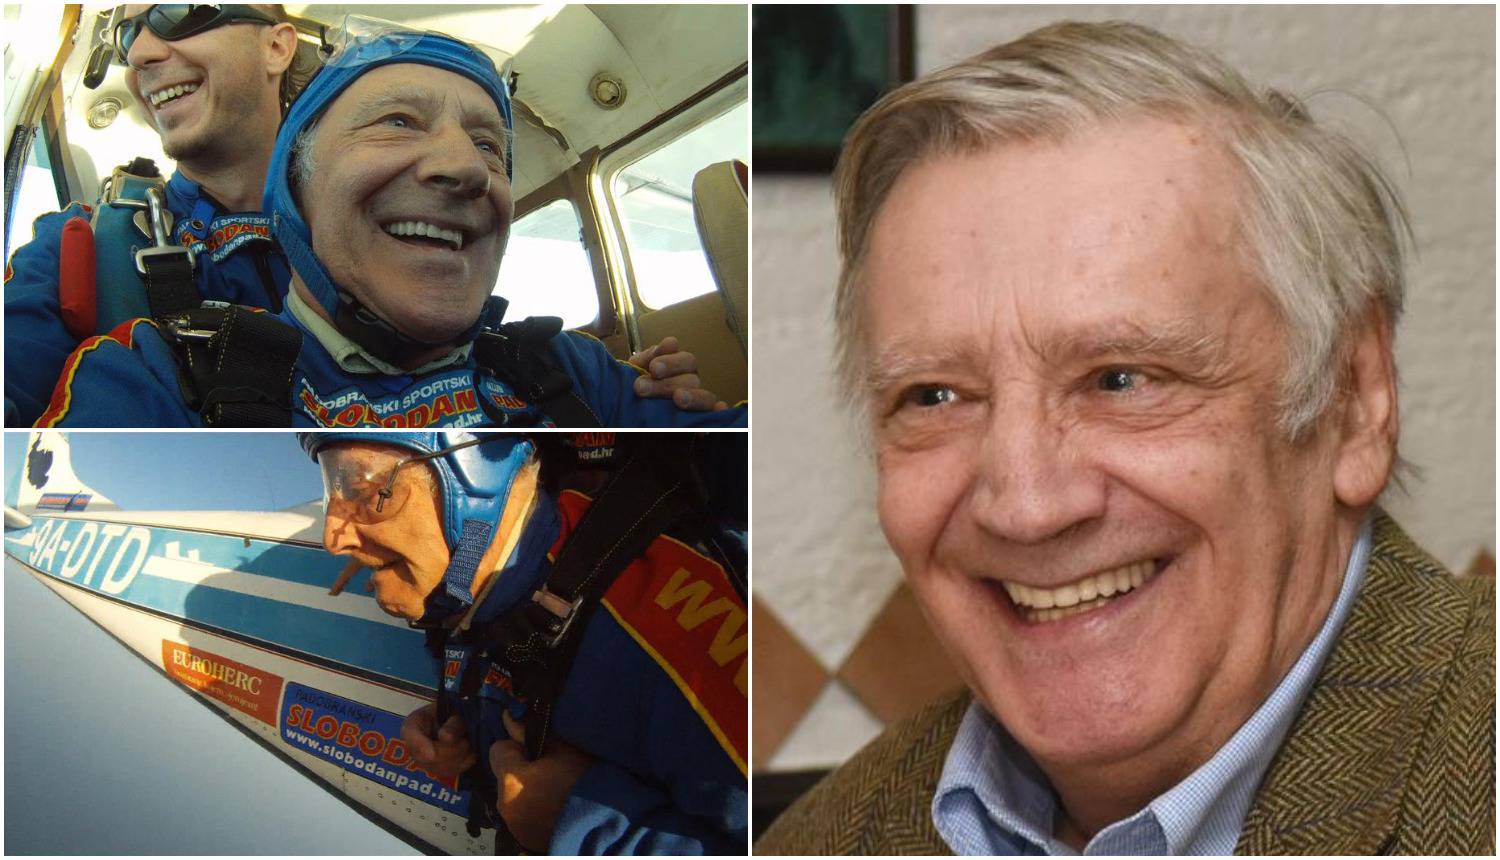 Glumac (73) postao djed: Unuk će sa mnom skakati iz aviona...